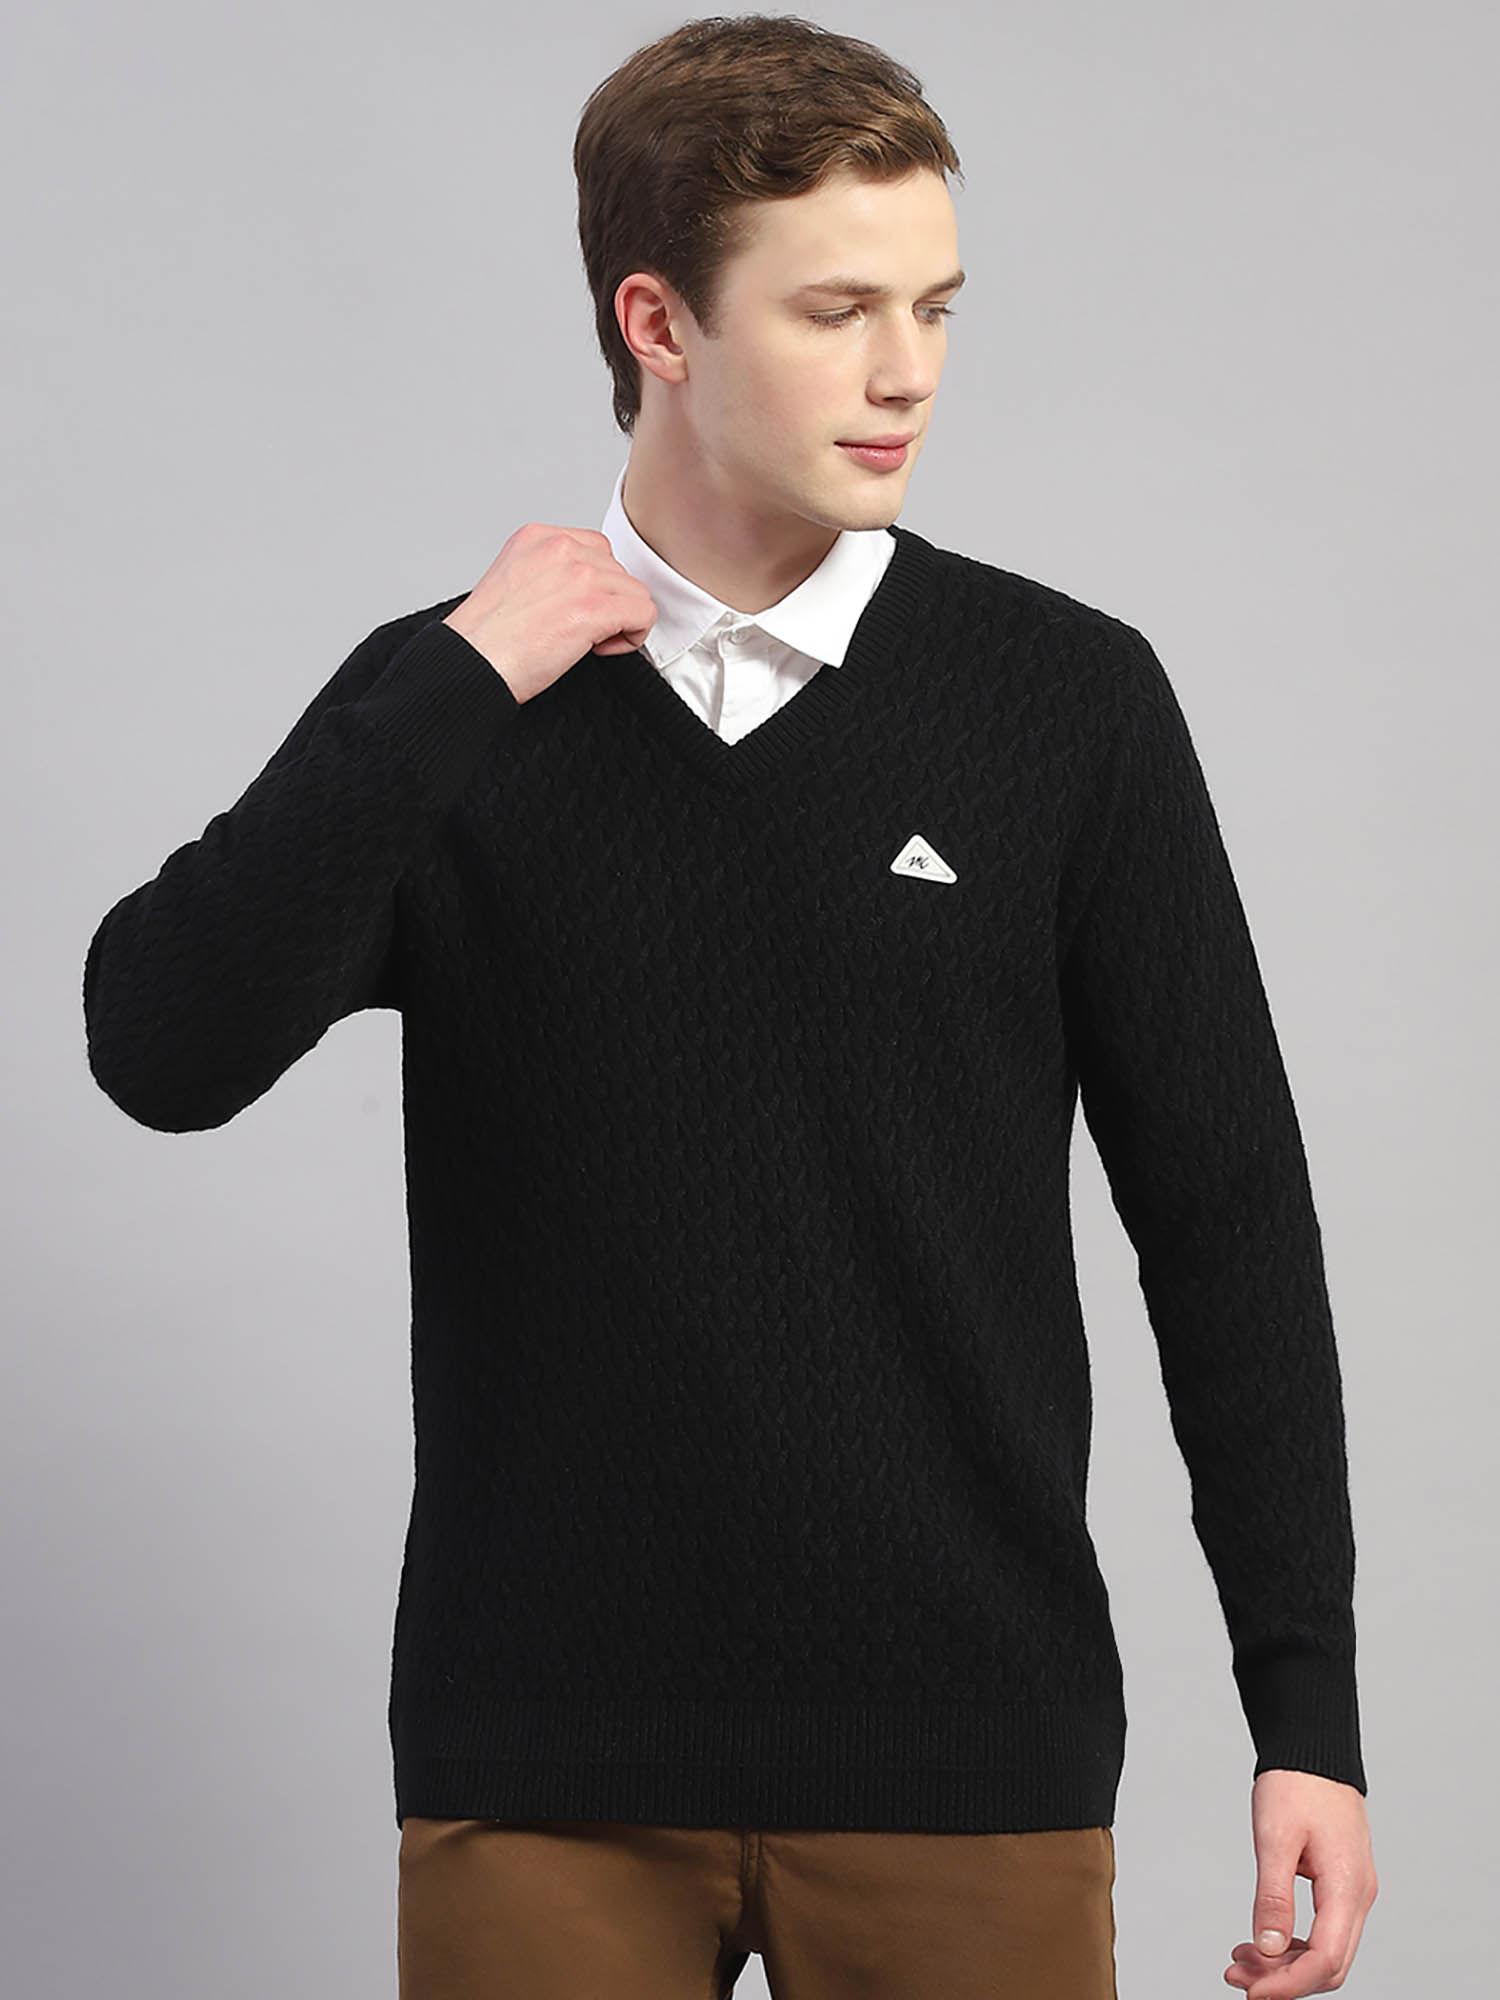 black woven v-neck sweater